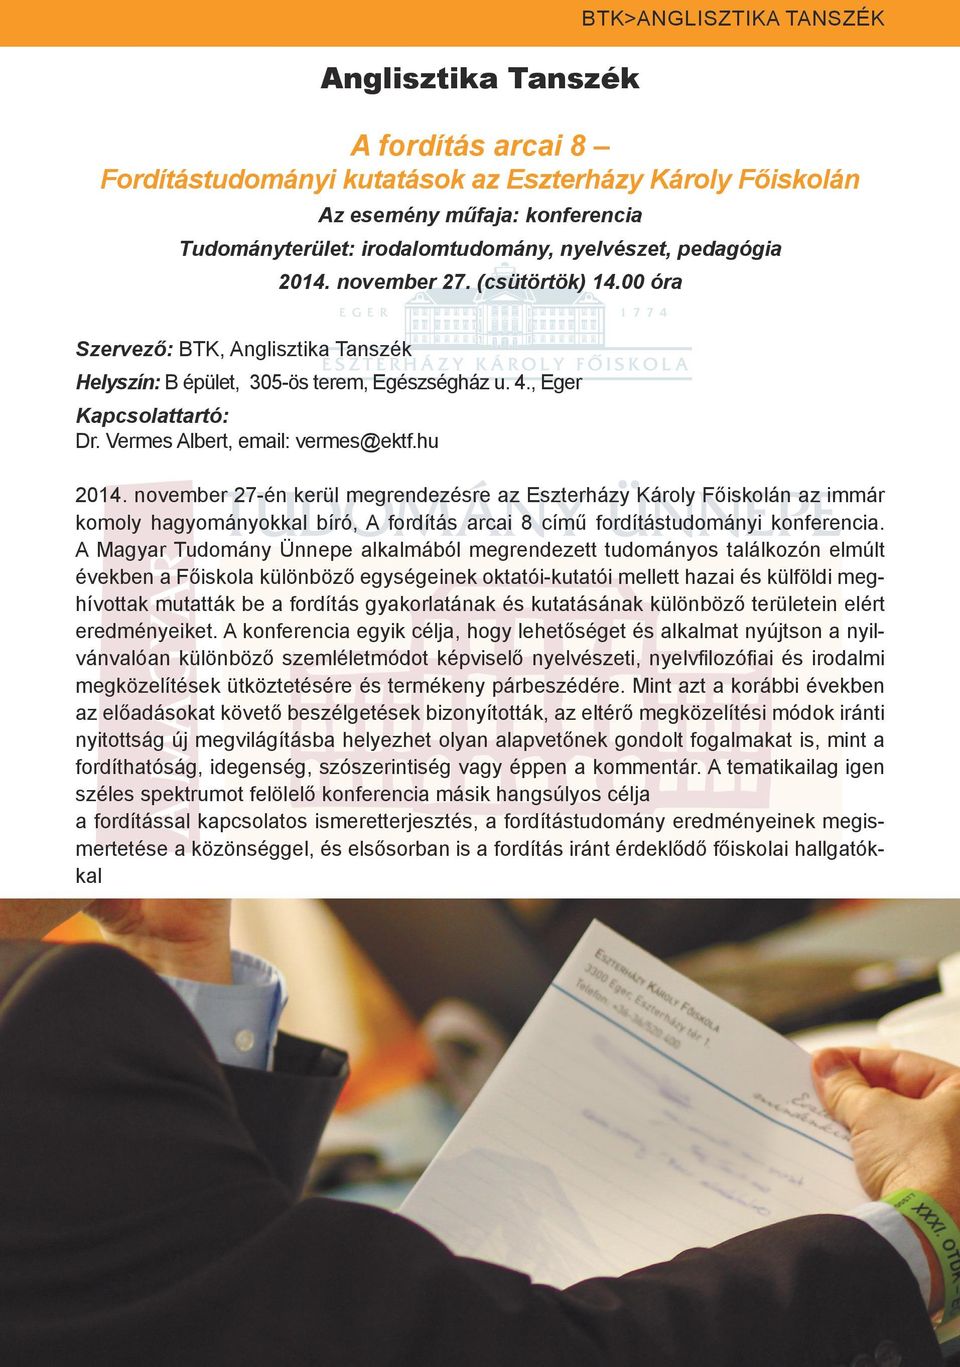 Vermes Albert, email: vermes@ektf.hu 2014. november 27-én kerül megrendezésre az Eszterházy Károly Főiskolán az immár komoly hagyományokkal bíró, A fordítás arcai 8 című fordítástudományi konferencia.